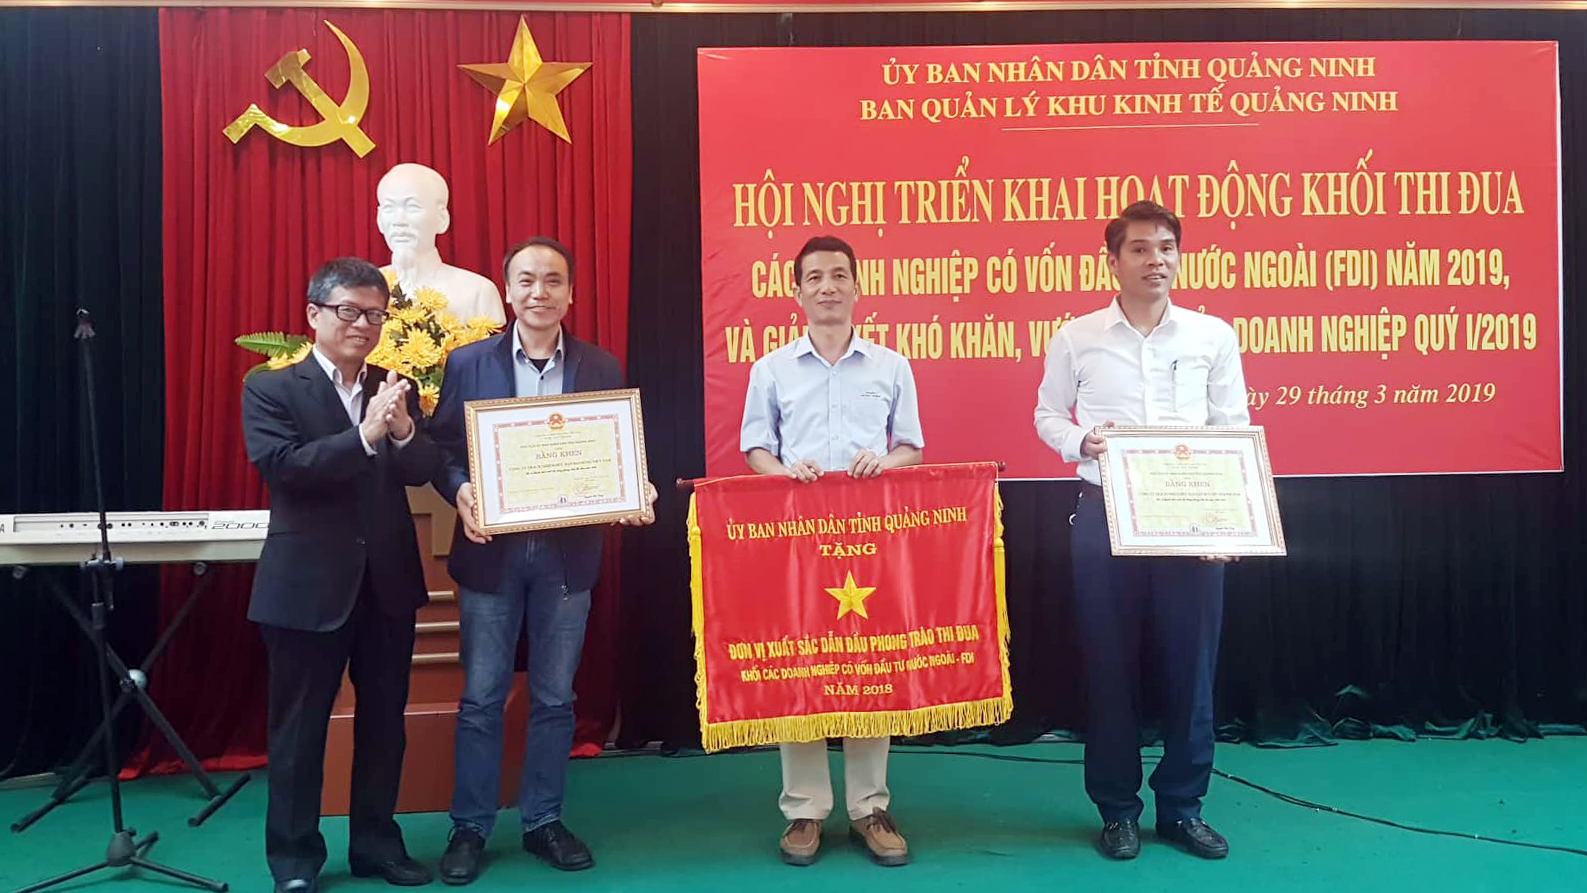 Đồng chí Nguyễn Mạnh Tuấn, Trưởng Ban quản lý khu kinh tế tỉnh trao tặng cờ, bằng khen cho các doanh nghiệp.